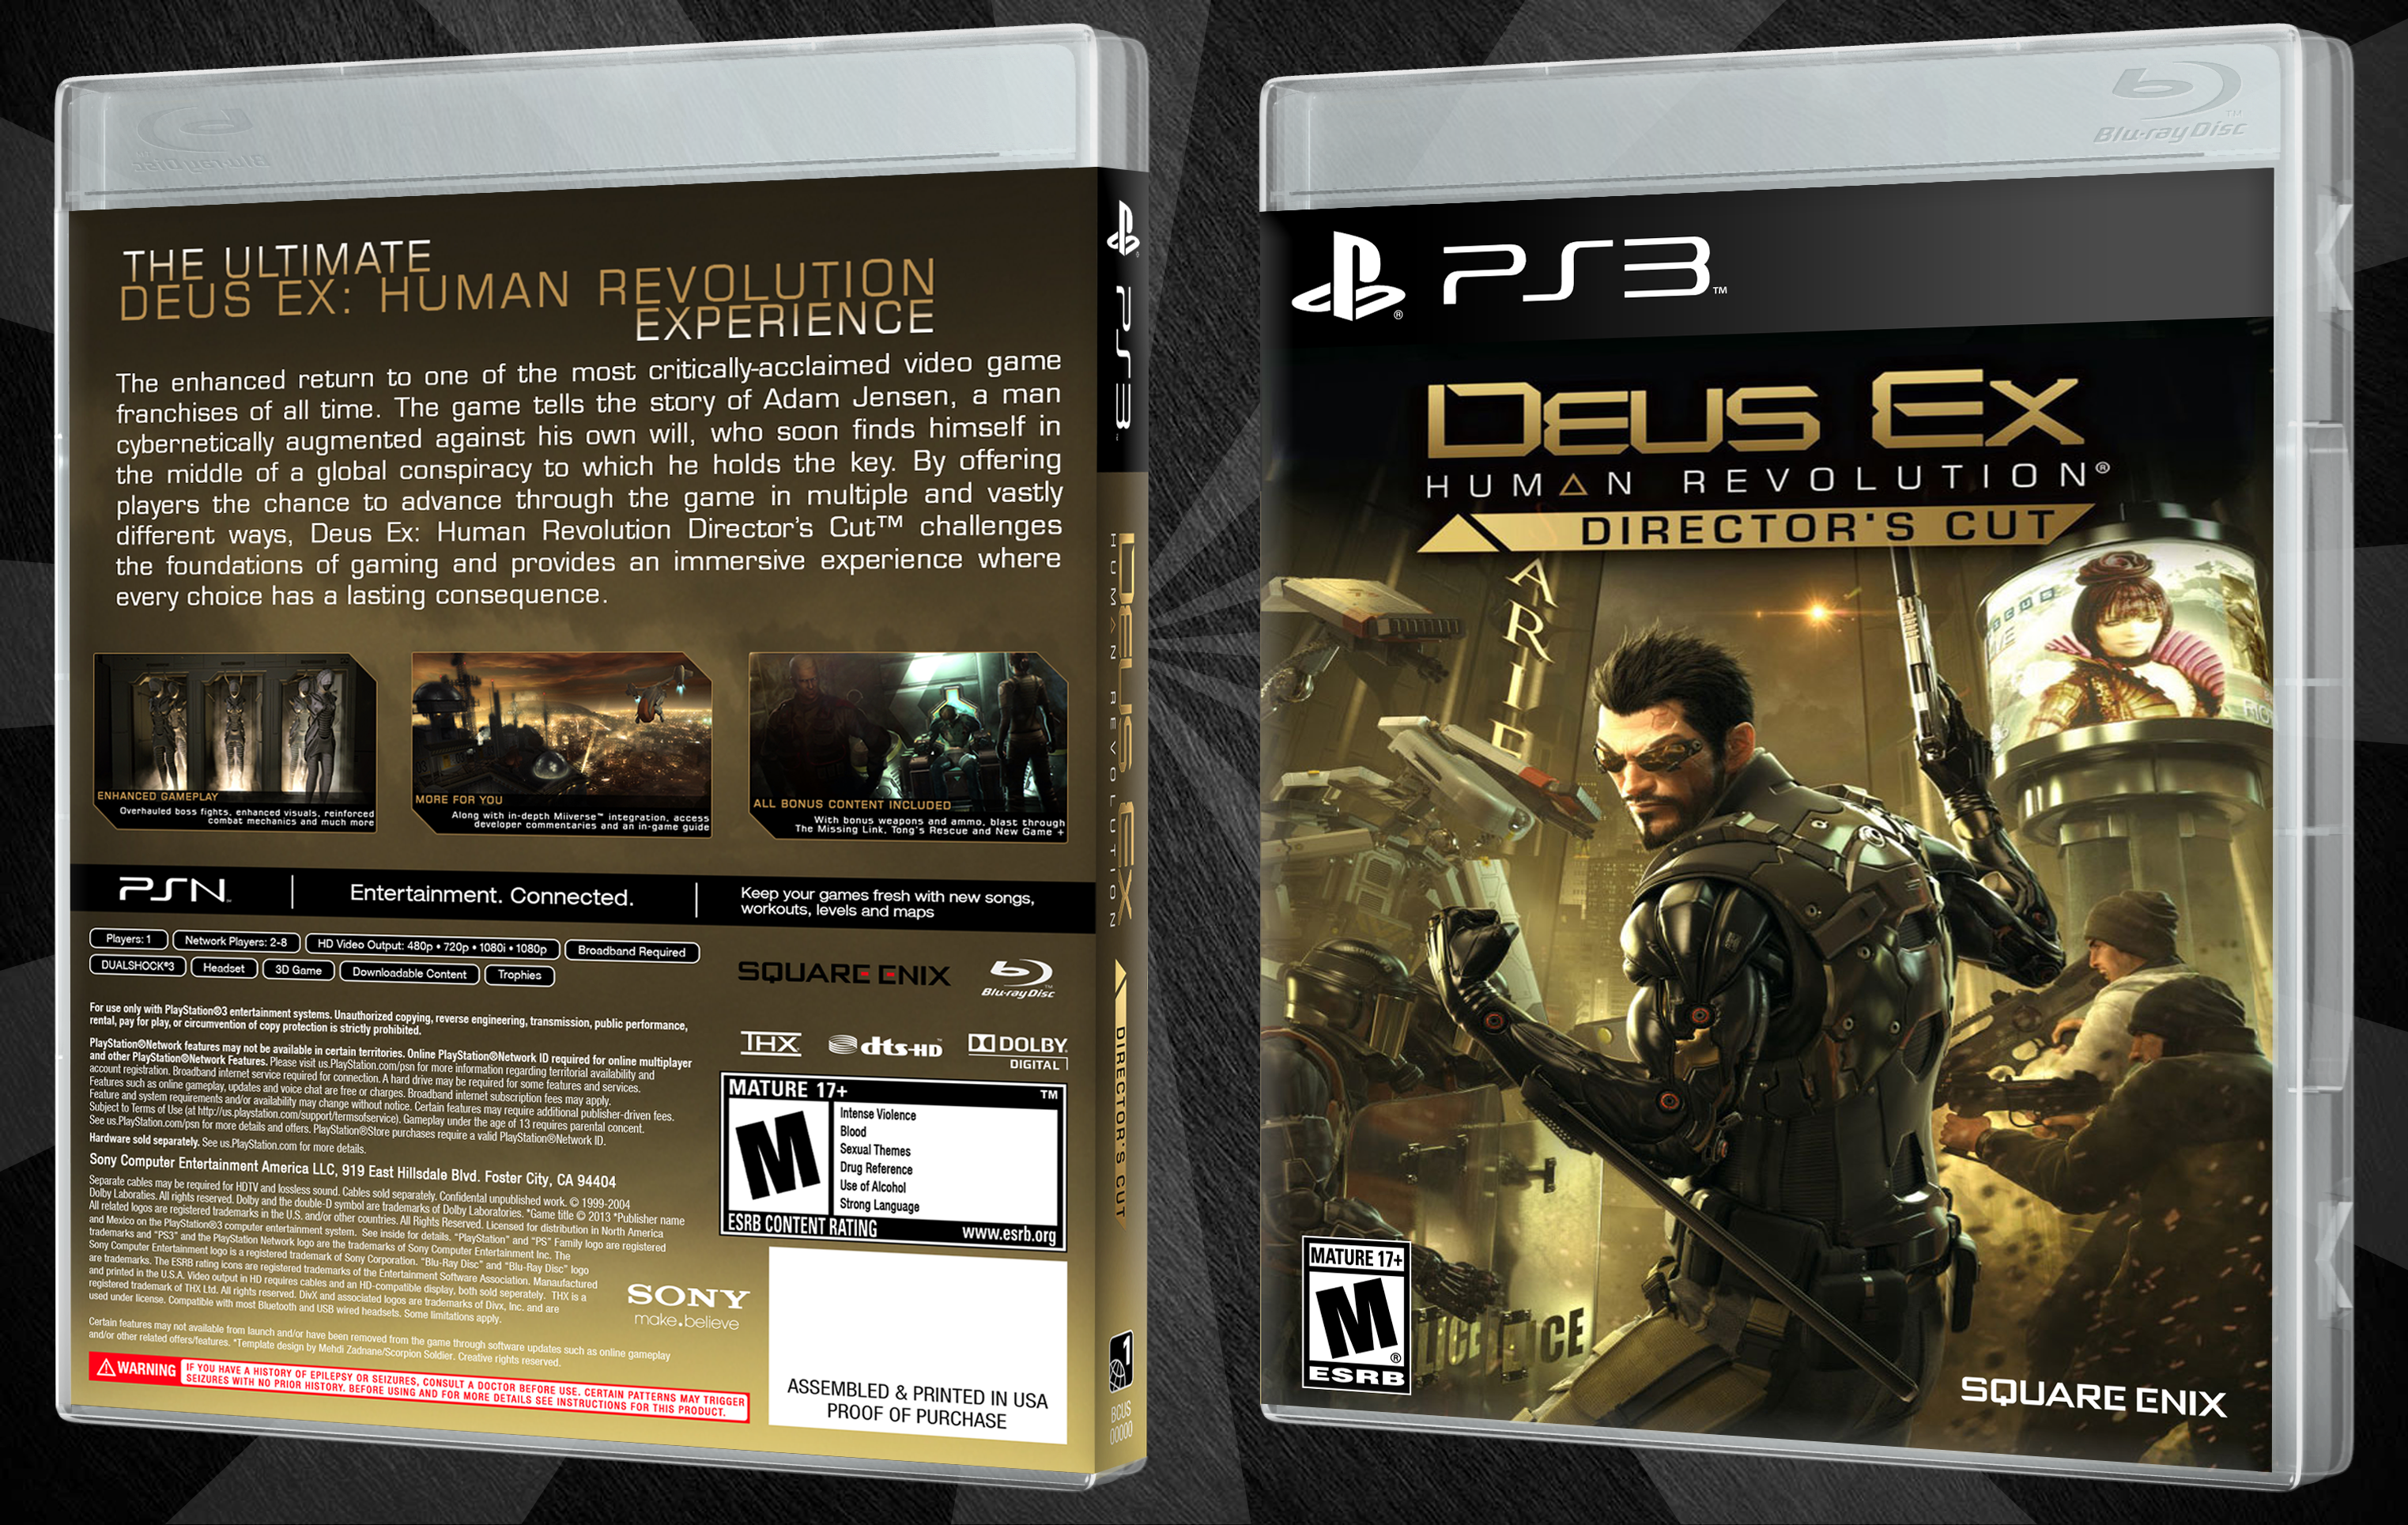 Deus Ex Human Revolution Director's Cut box cover